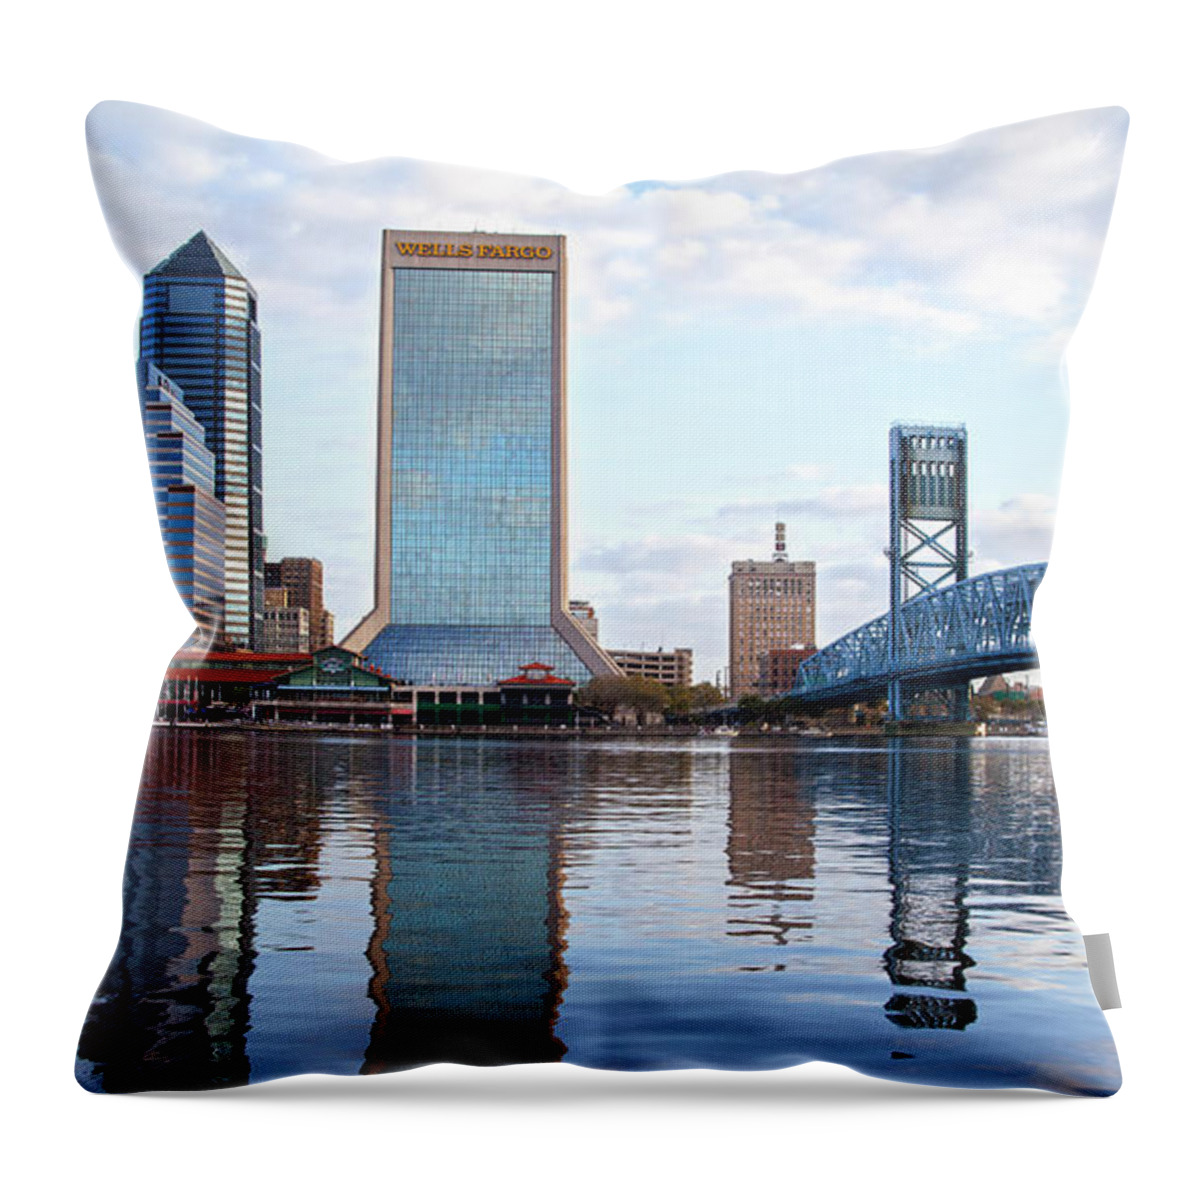 Jacksonville Throw Pillow featuring the photograph City by Robert Och